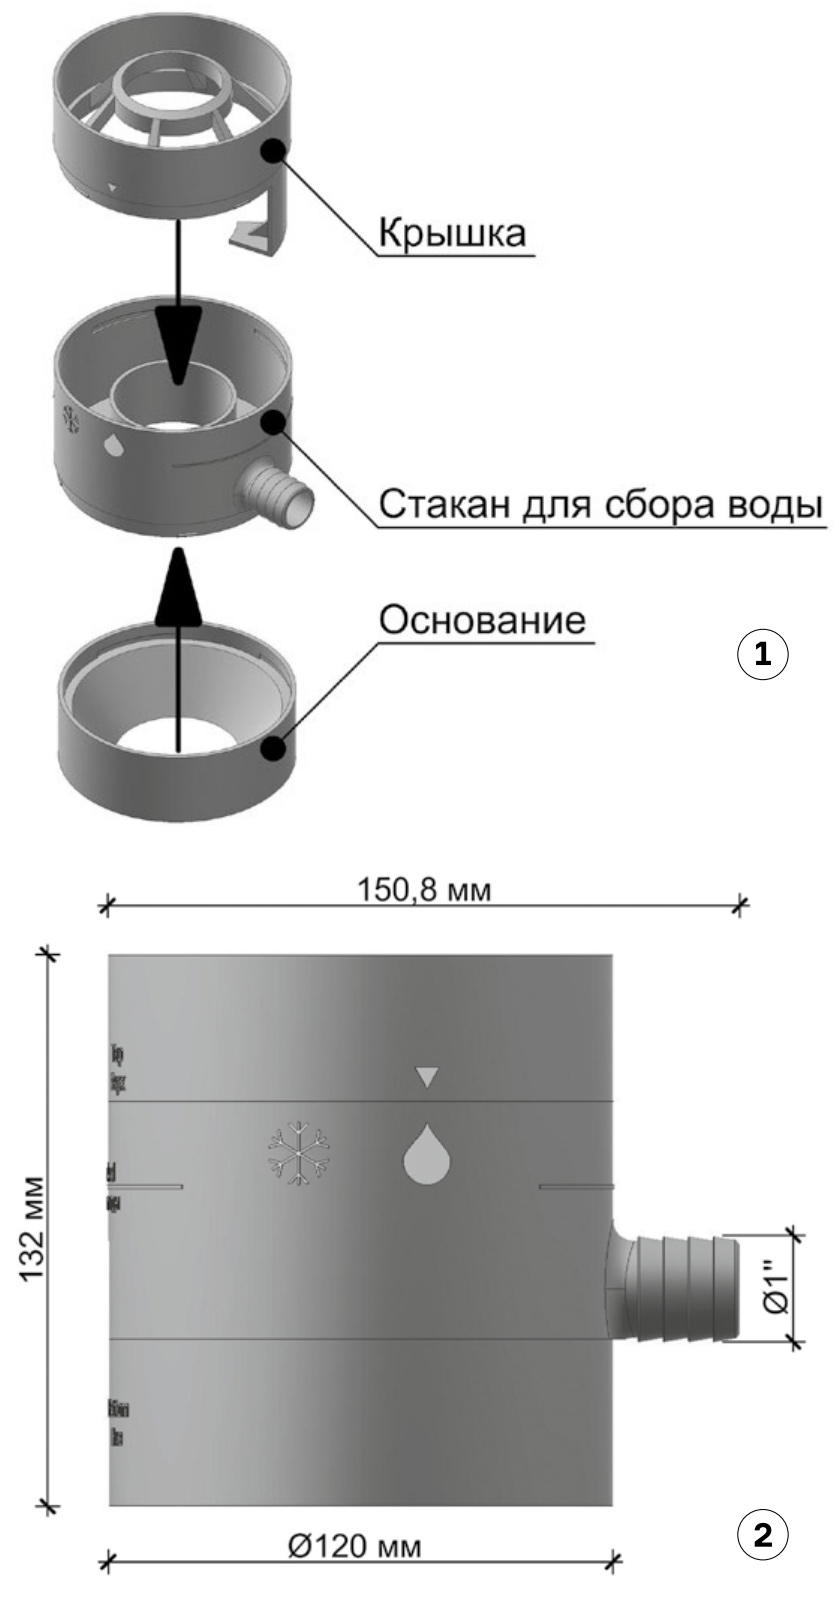 Основные элементы и габаритные размеры водосборника